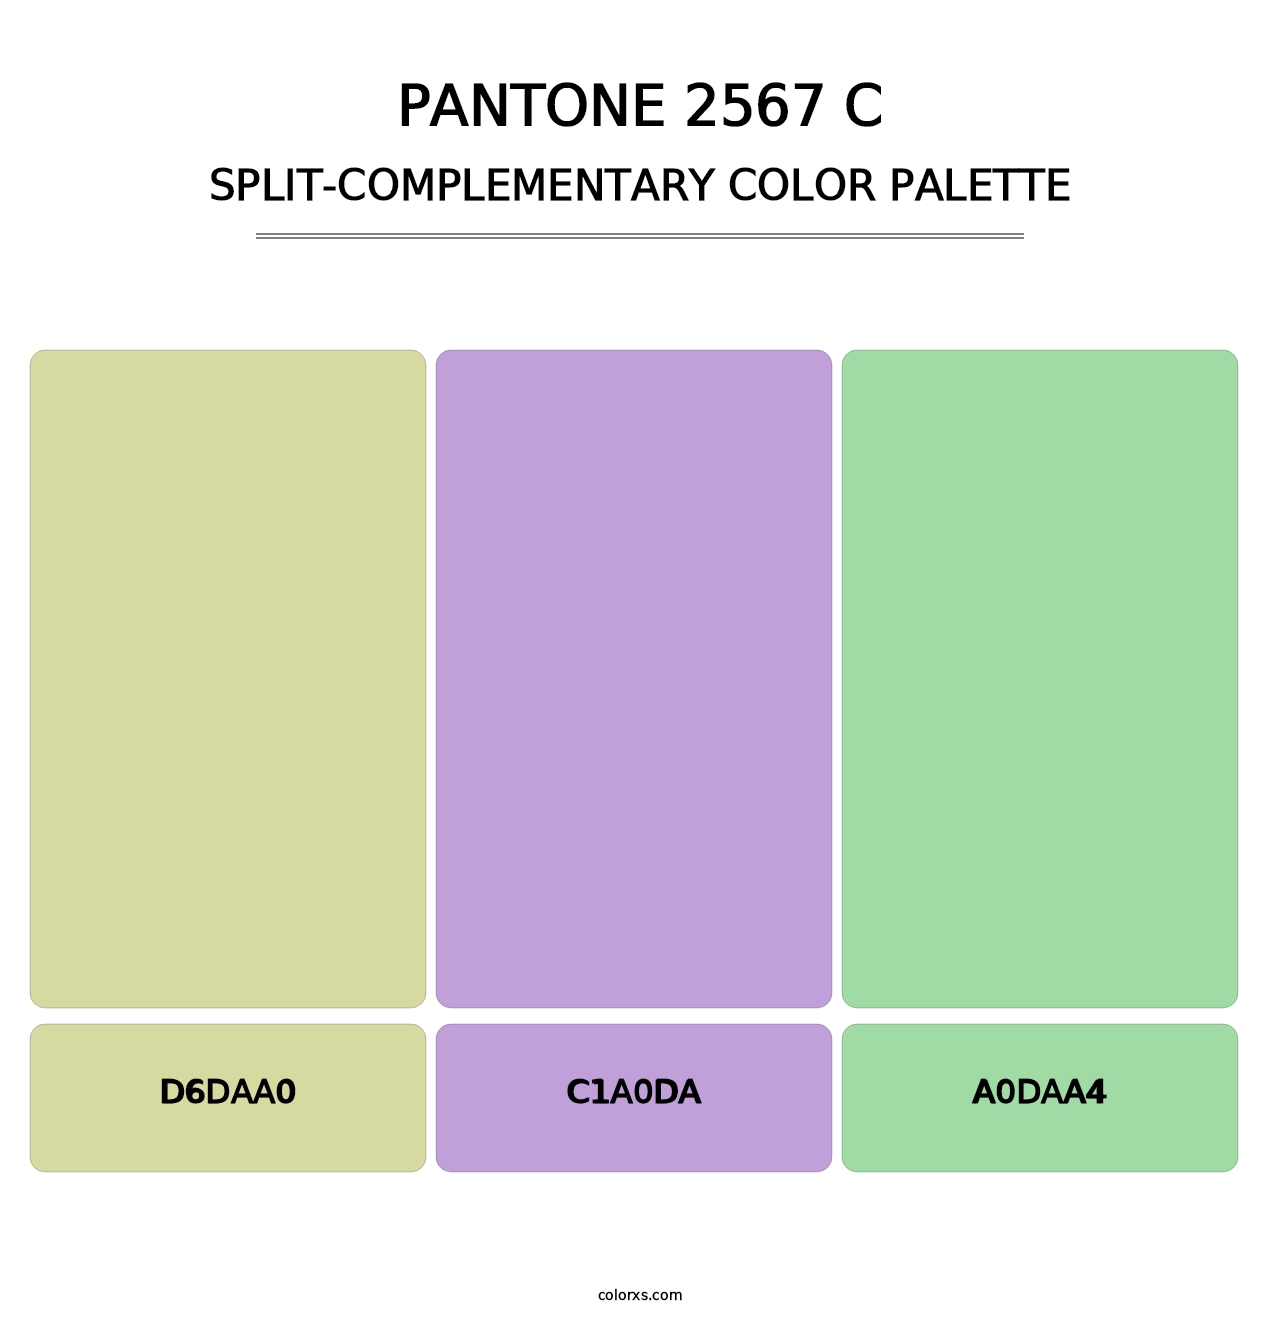 PANTONE 2567 C - Split-Complementary Color Palette